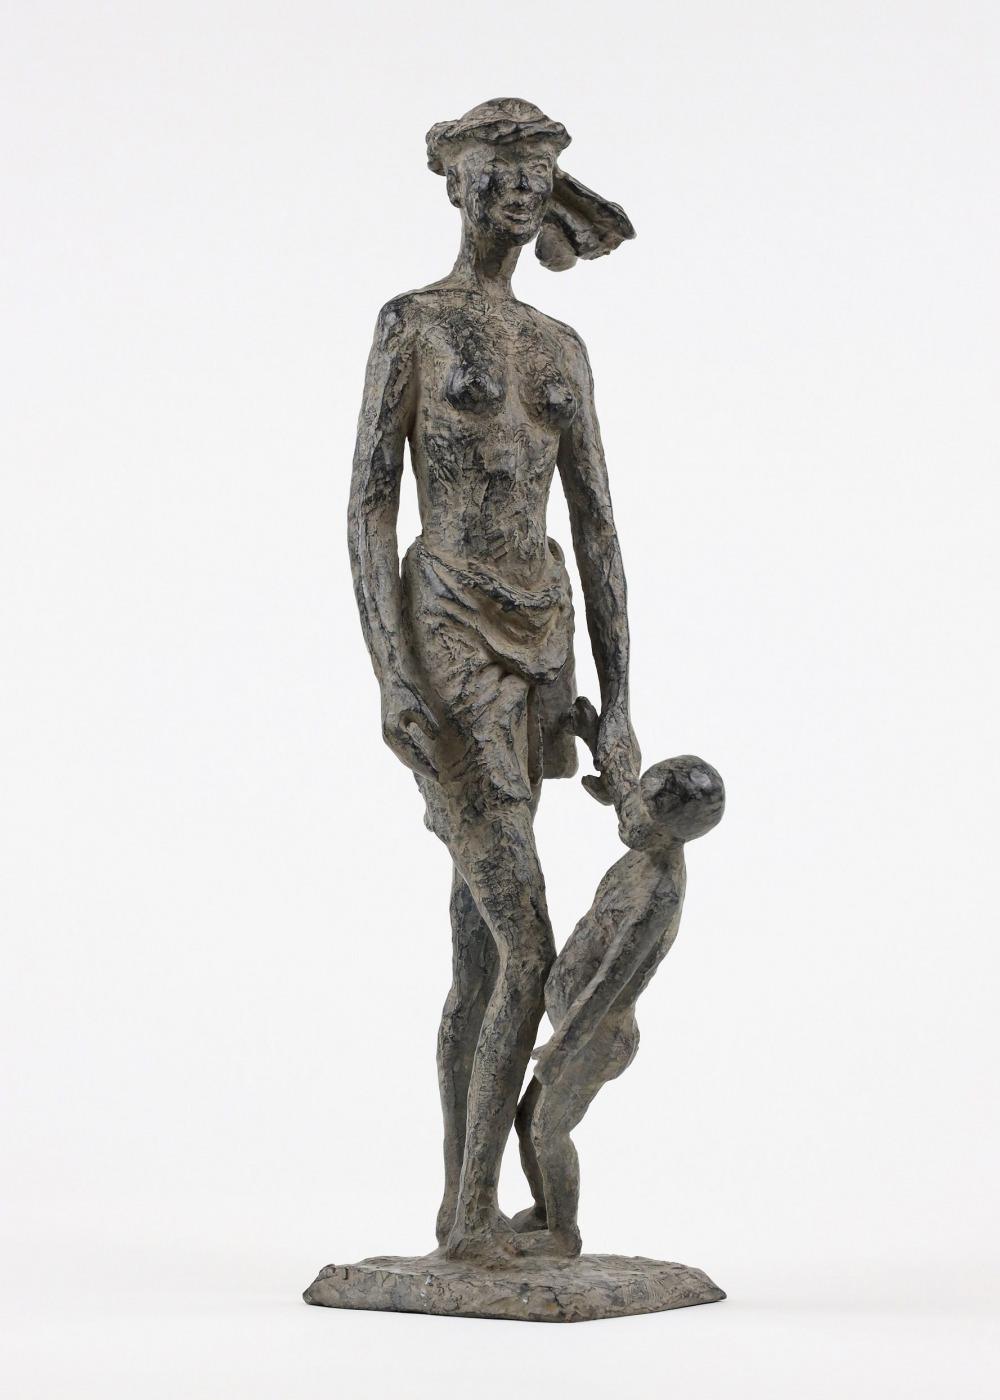 All the time in the world ist eine Bronzeskulptur der französischen zeitgenössischen Künstlerin Marine de Soos mit den Maßen 40 × 17 × 12 cm (15,7 × 6,7 × 4,7 in). 
Die Skulptur ist signiert und nummeriert, gehört zu einer limitierten Auflage von 8